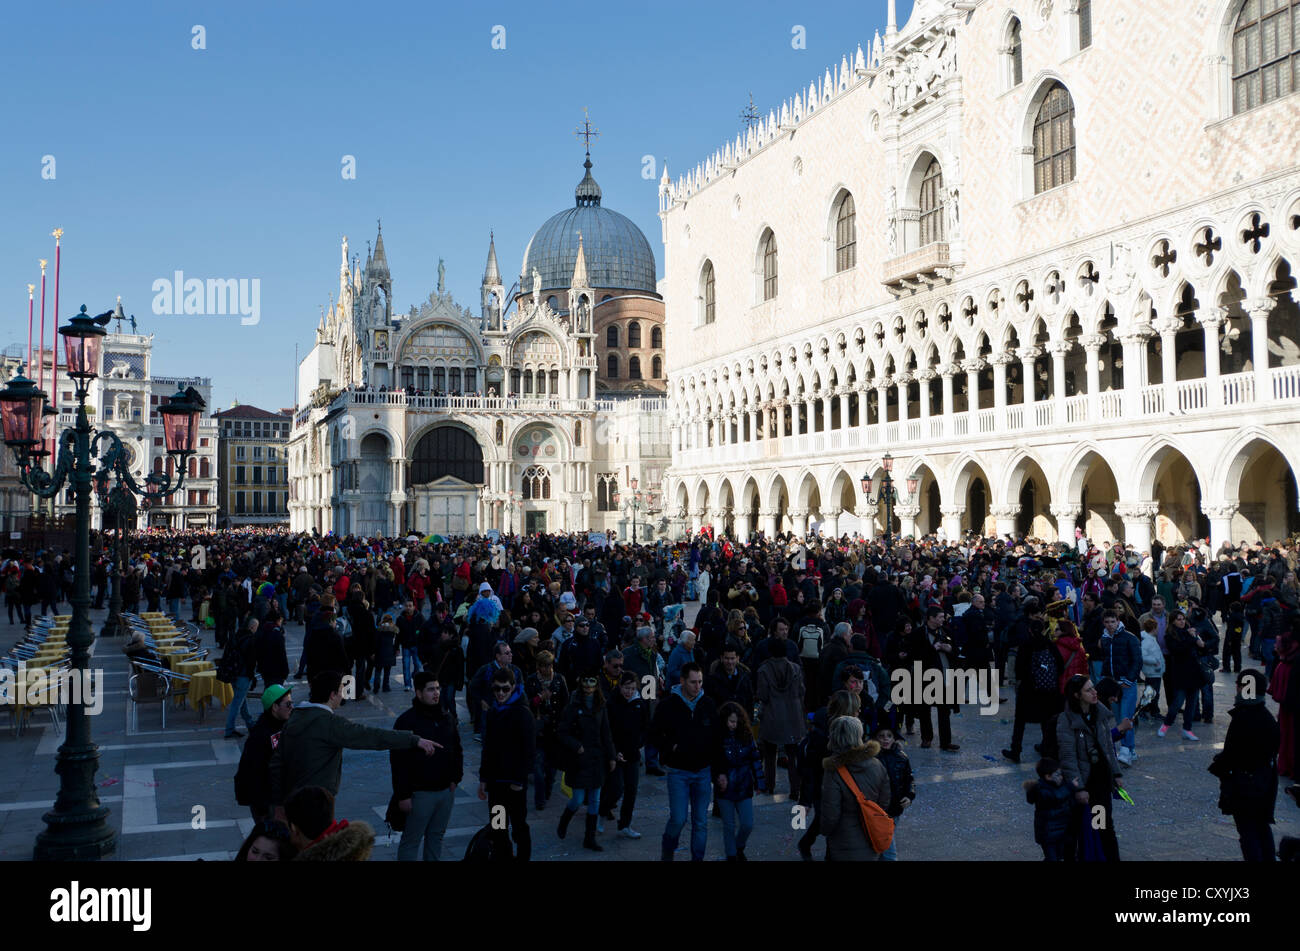 Carnevale, carnival in Venice, Veneto, Italy, Europe Stock Photo